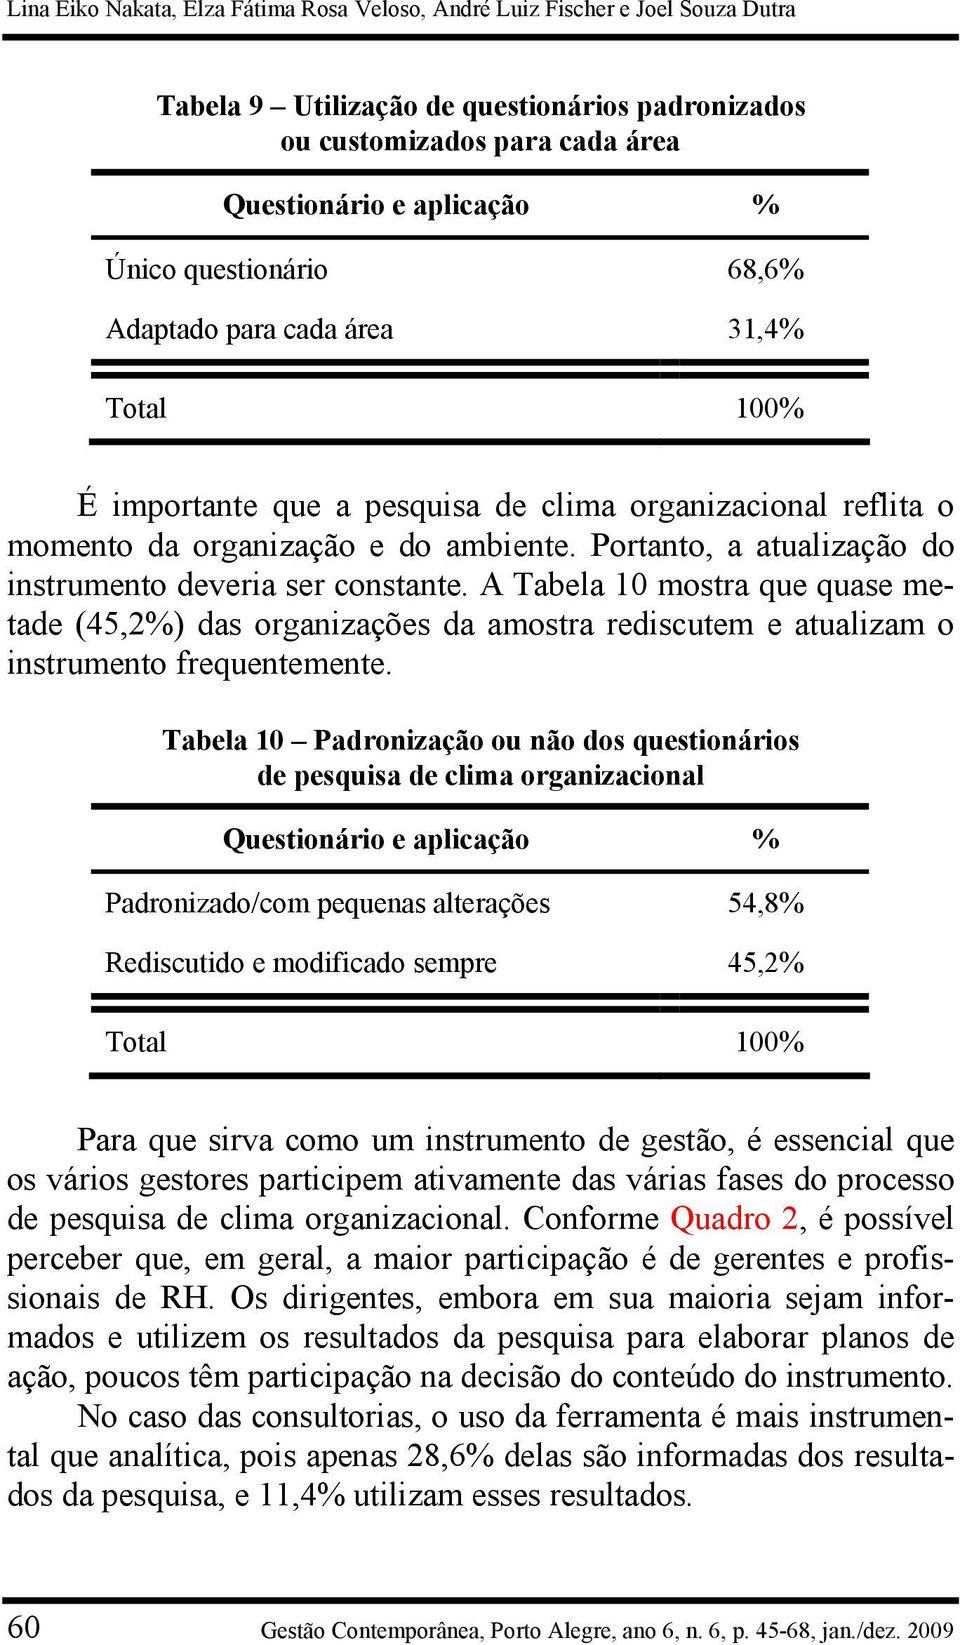 Portanto, a atualização do instrumento deveria ser constante. A Tabela 10 mostra que quase metade (45,2%) das organizações da amostra rediscutem e atualizam o instrumento frequentemente.